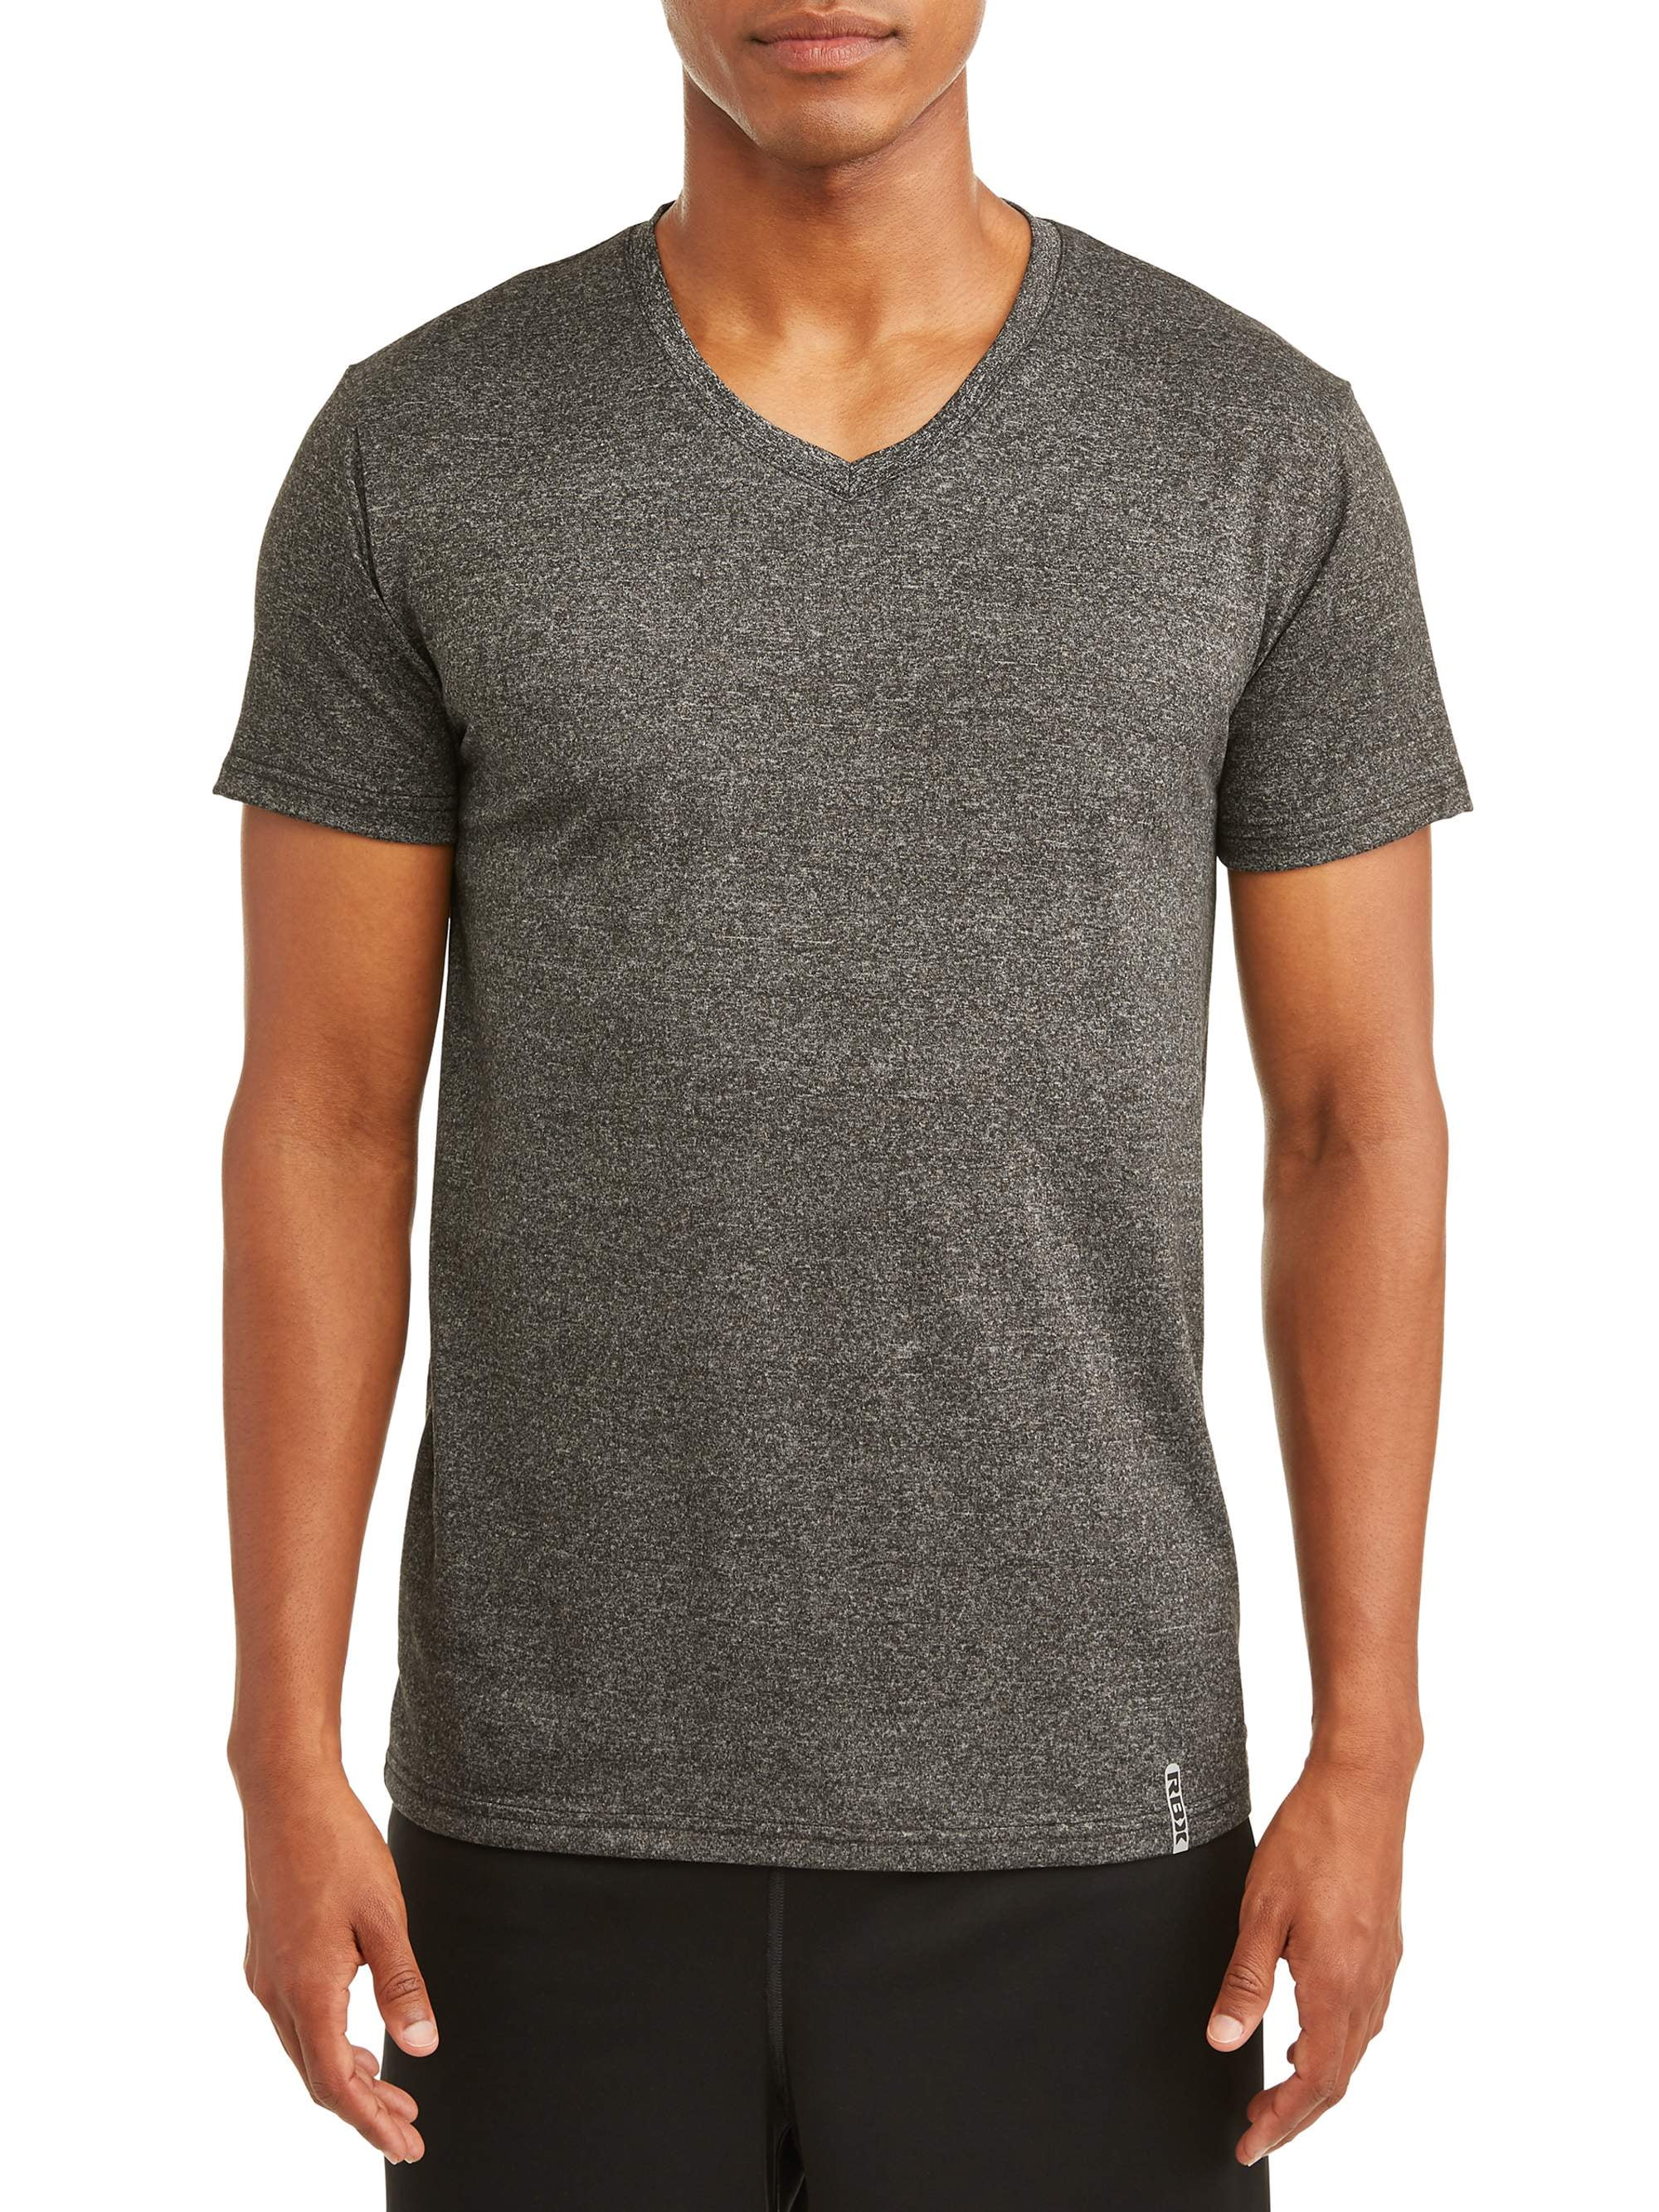 RBX Men's Ultra Soft Short-Sleeve Vee-Neck T-Shirt - Walmart.com